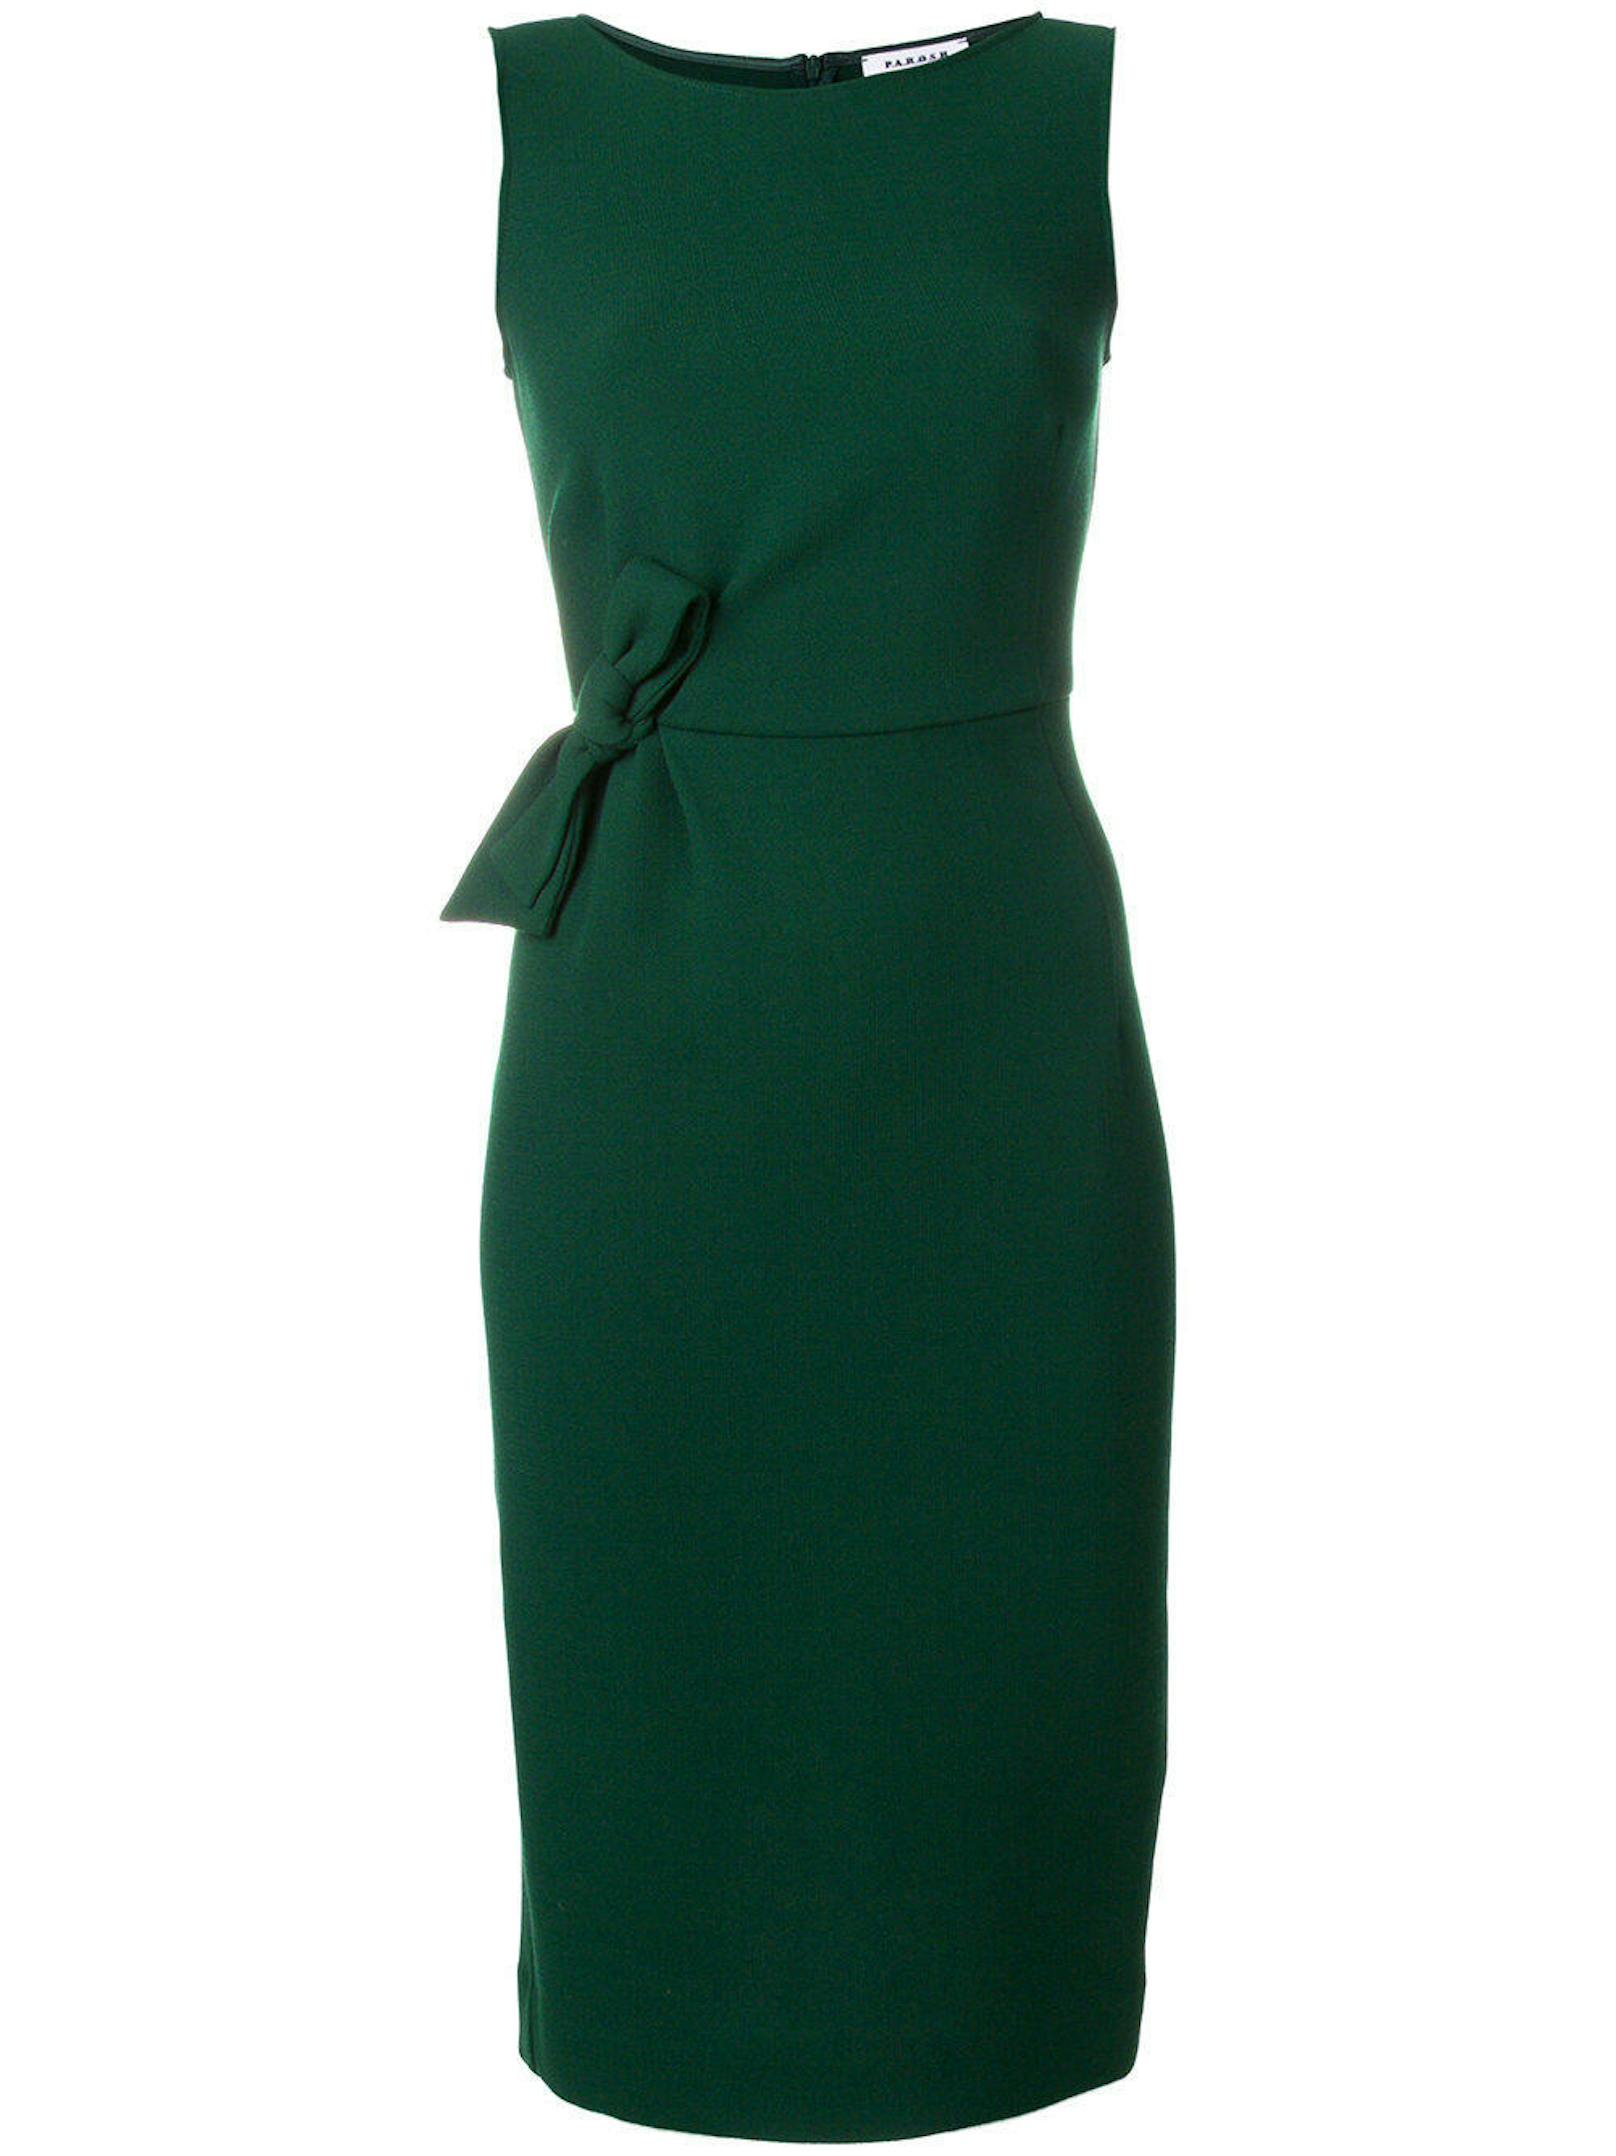 Darunter trug Markle ein grünes Kleid der Marke P.A.R.O.S.H. um rund 1000 Euro, das derzeit aber überall ausverkauft ist - einzig im Steffl Department Store Vienna auf der Kärntner Straße könnte man noch Chancen haben. <a href="https://www.farfetch.com/ca/shopping/women/p-a-r-o-s-h--fitted-bow-detail-dress-item-12411723.aspx?utm_source=idBRCHEwd9g&utm_medium=affiliate&utm_campaign=Linkshareuk&utm_content=10&utm_term=UKNetwork">www.farfetch.com</a>